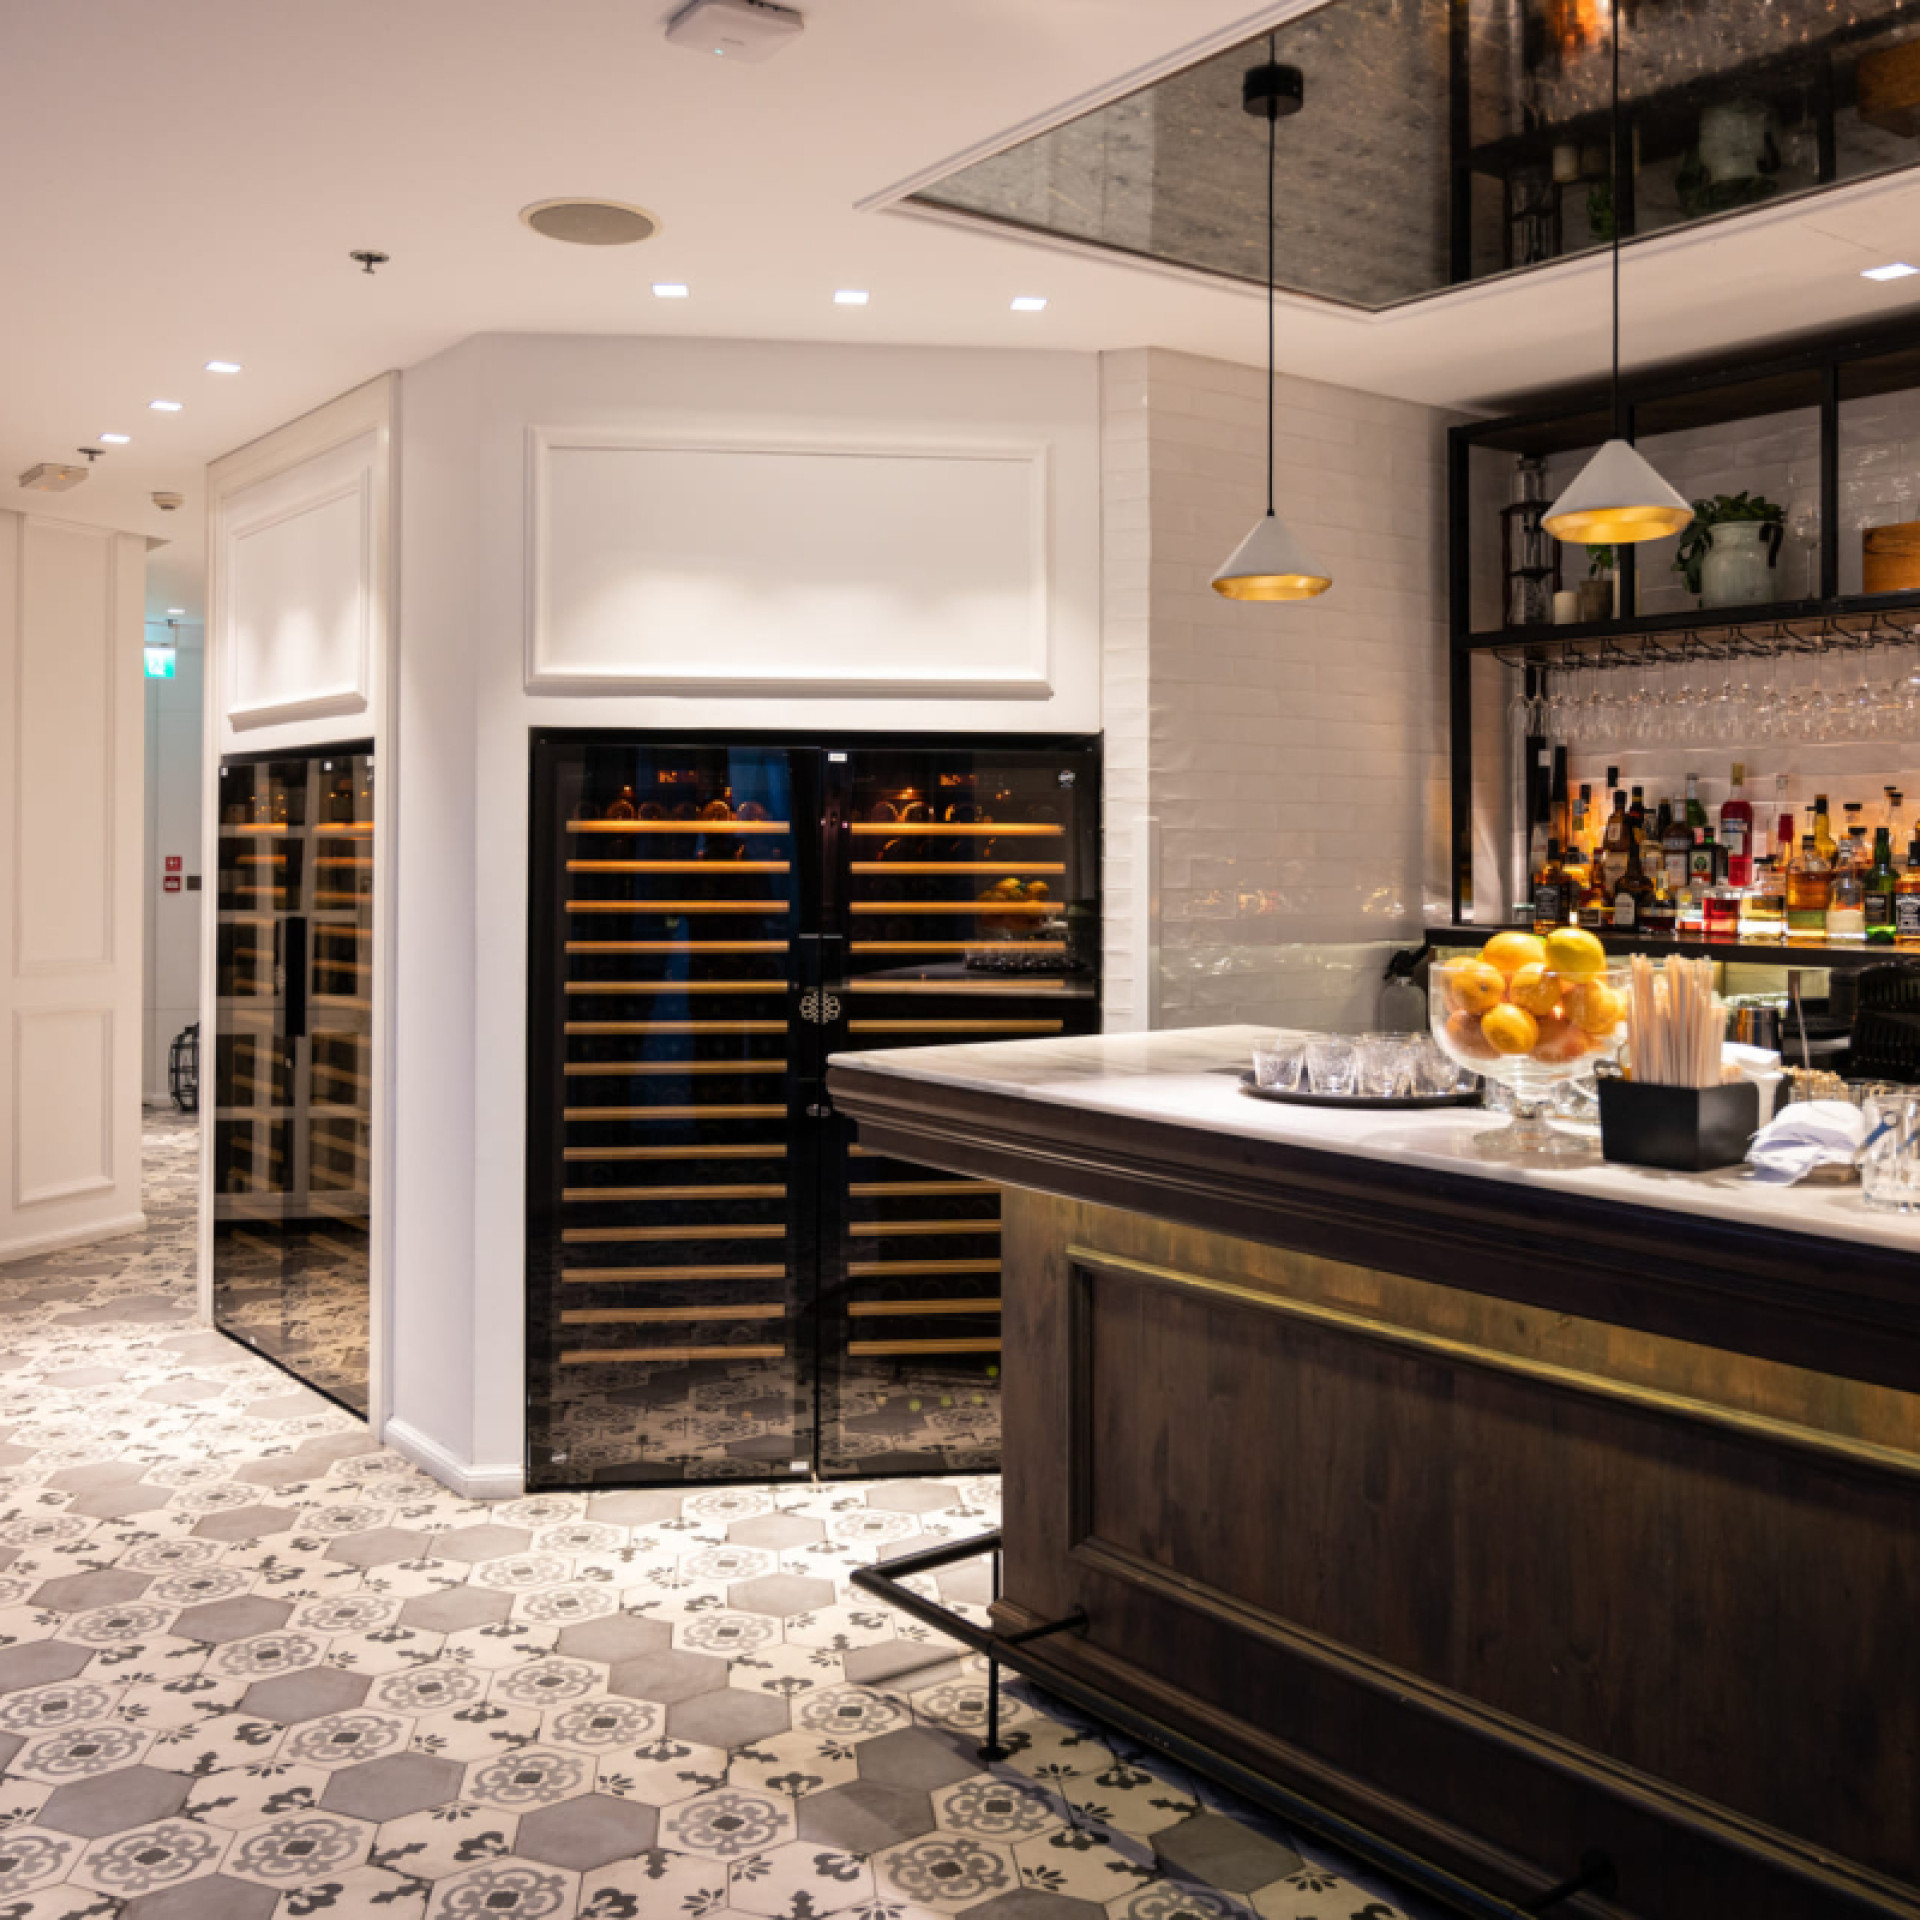 eurocave elegant restaurant interior design wine cabinet Carine dubai UAE pure 1